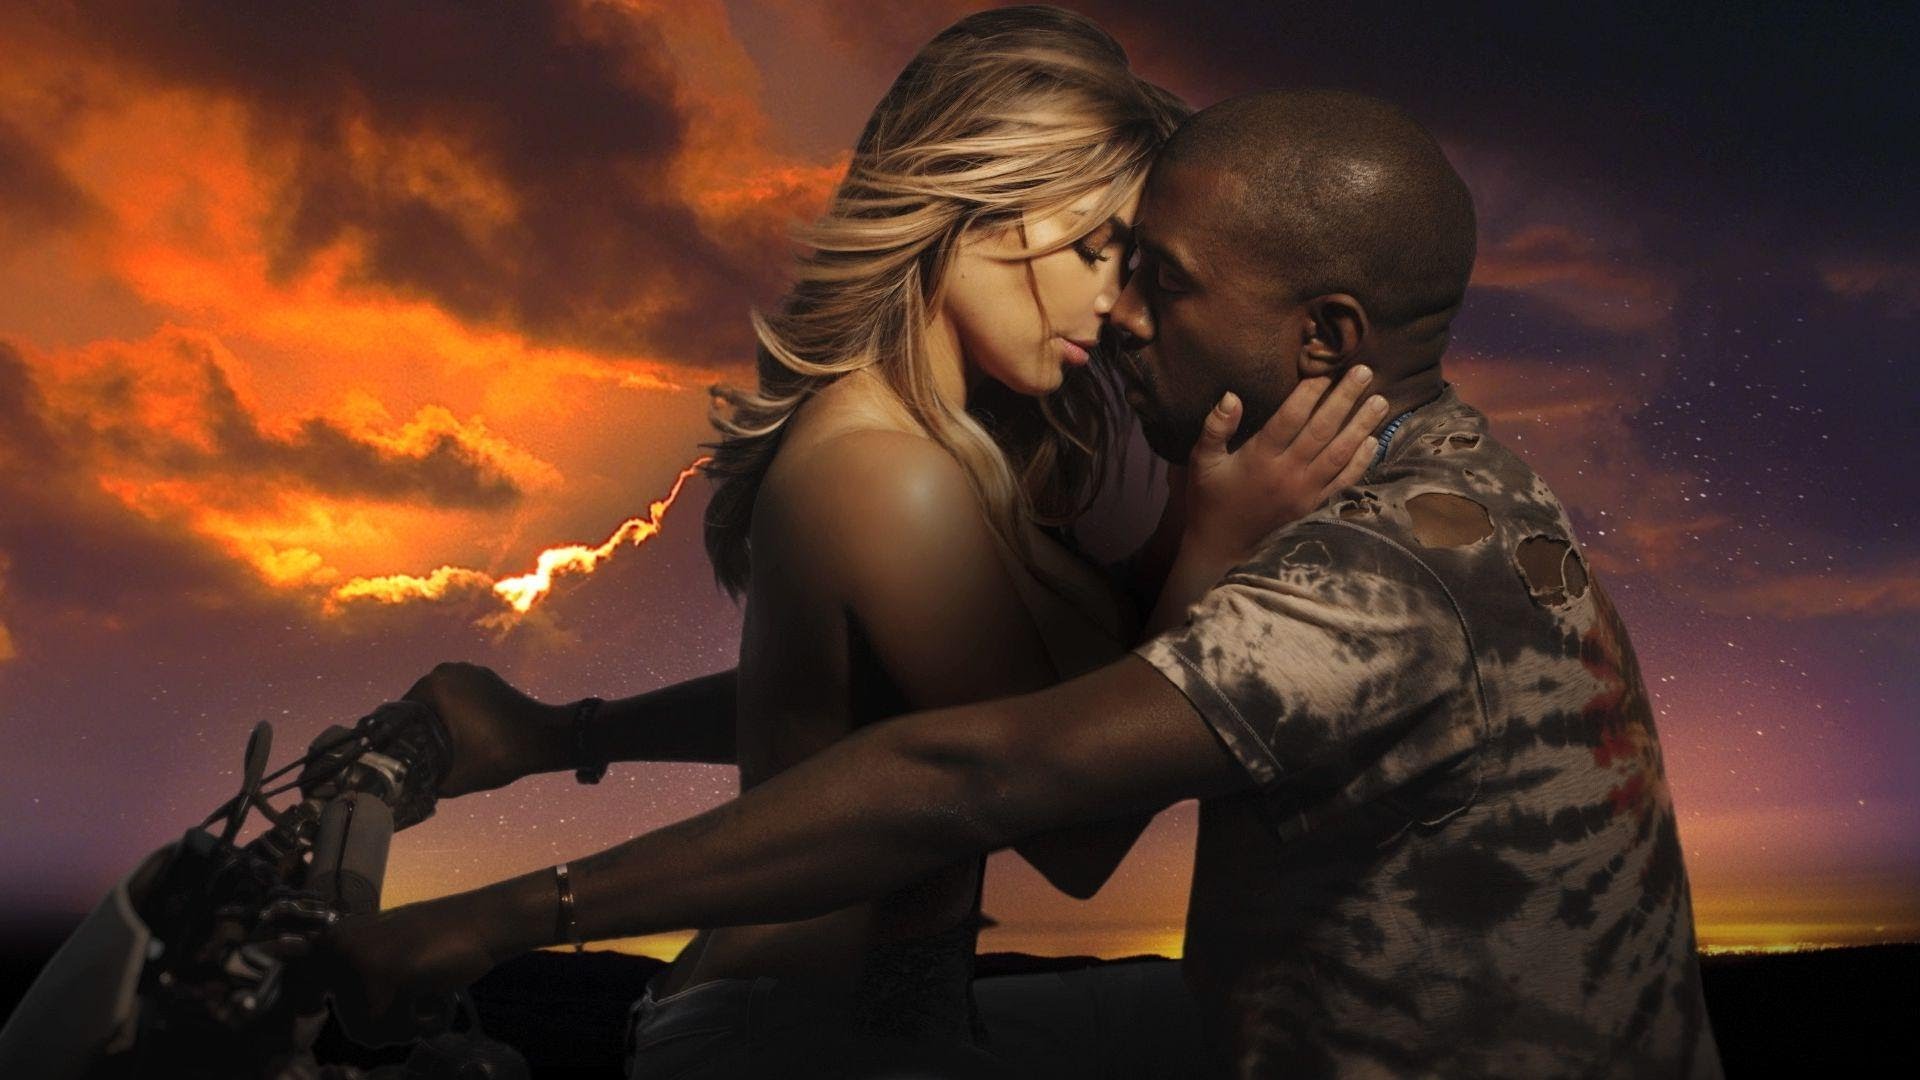 Kanye West – Bound 2